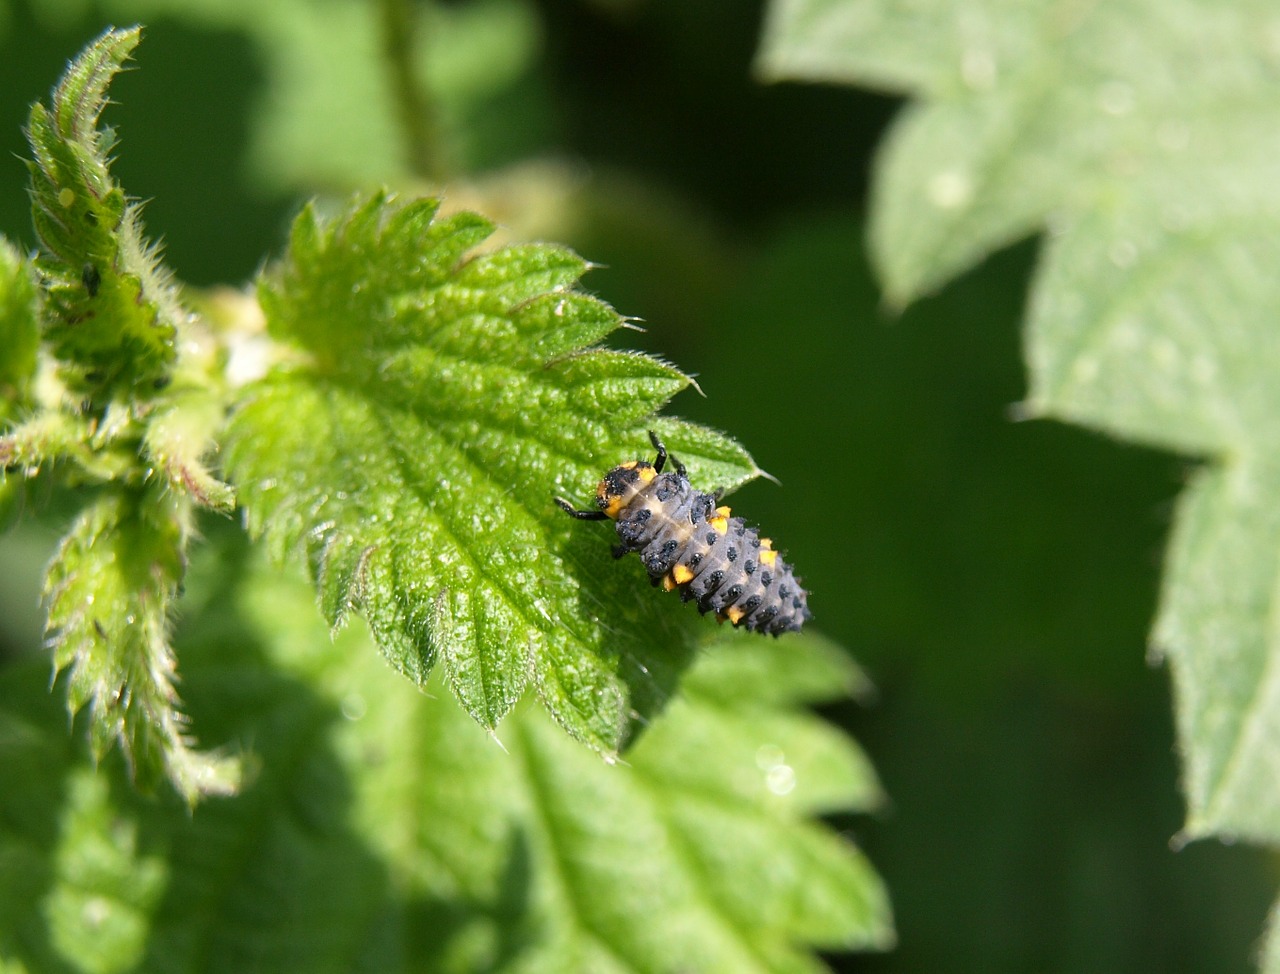 marienkäfer larva larva beetle free photo